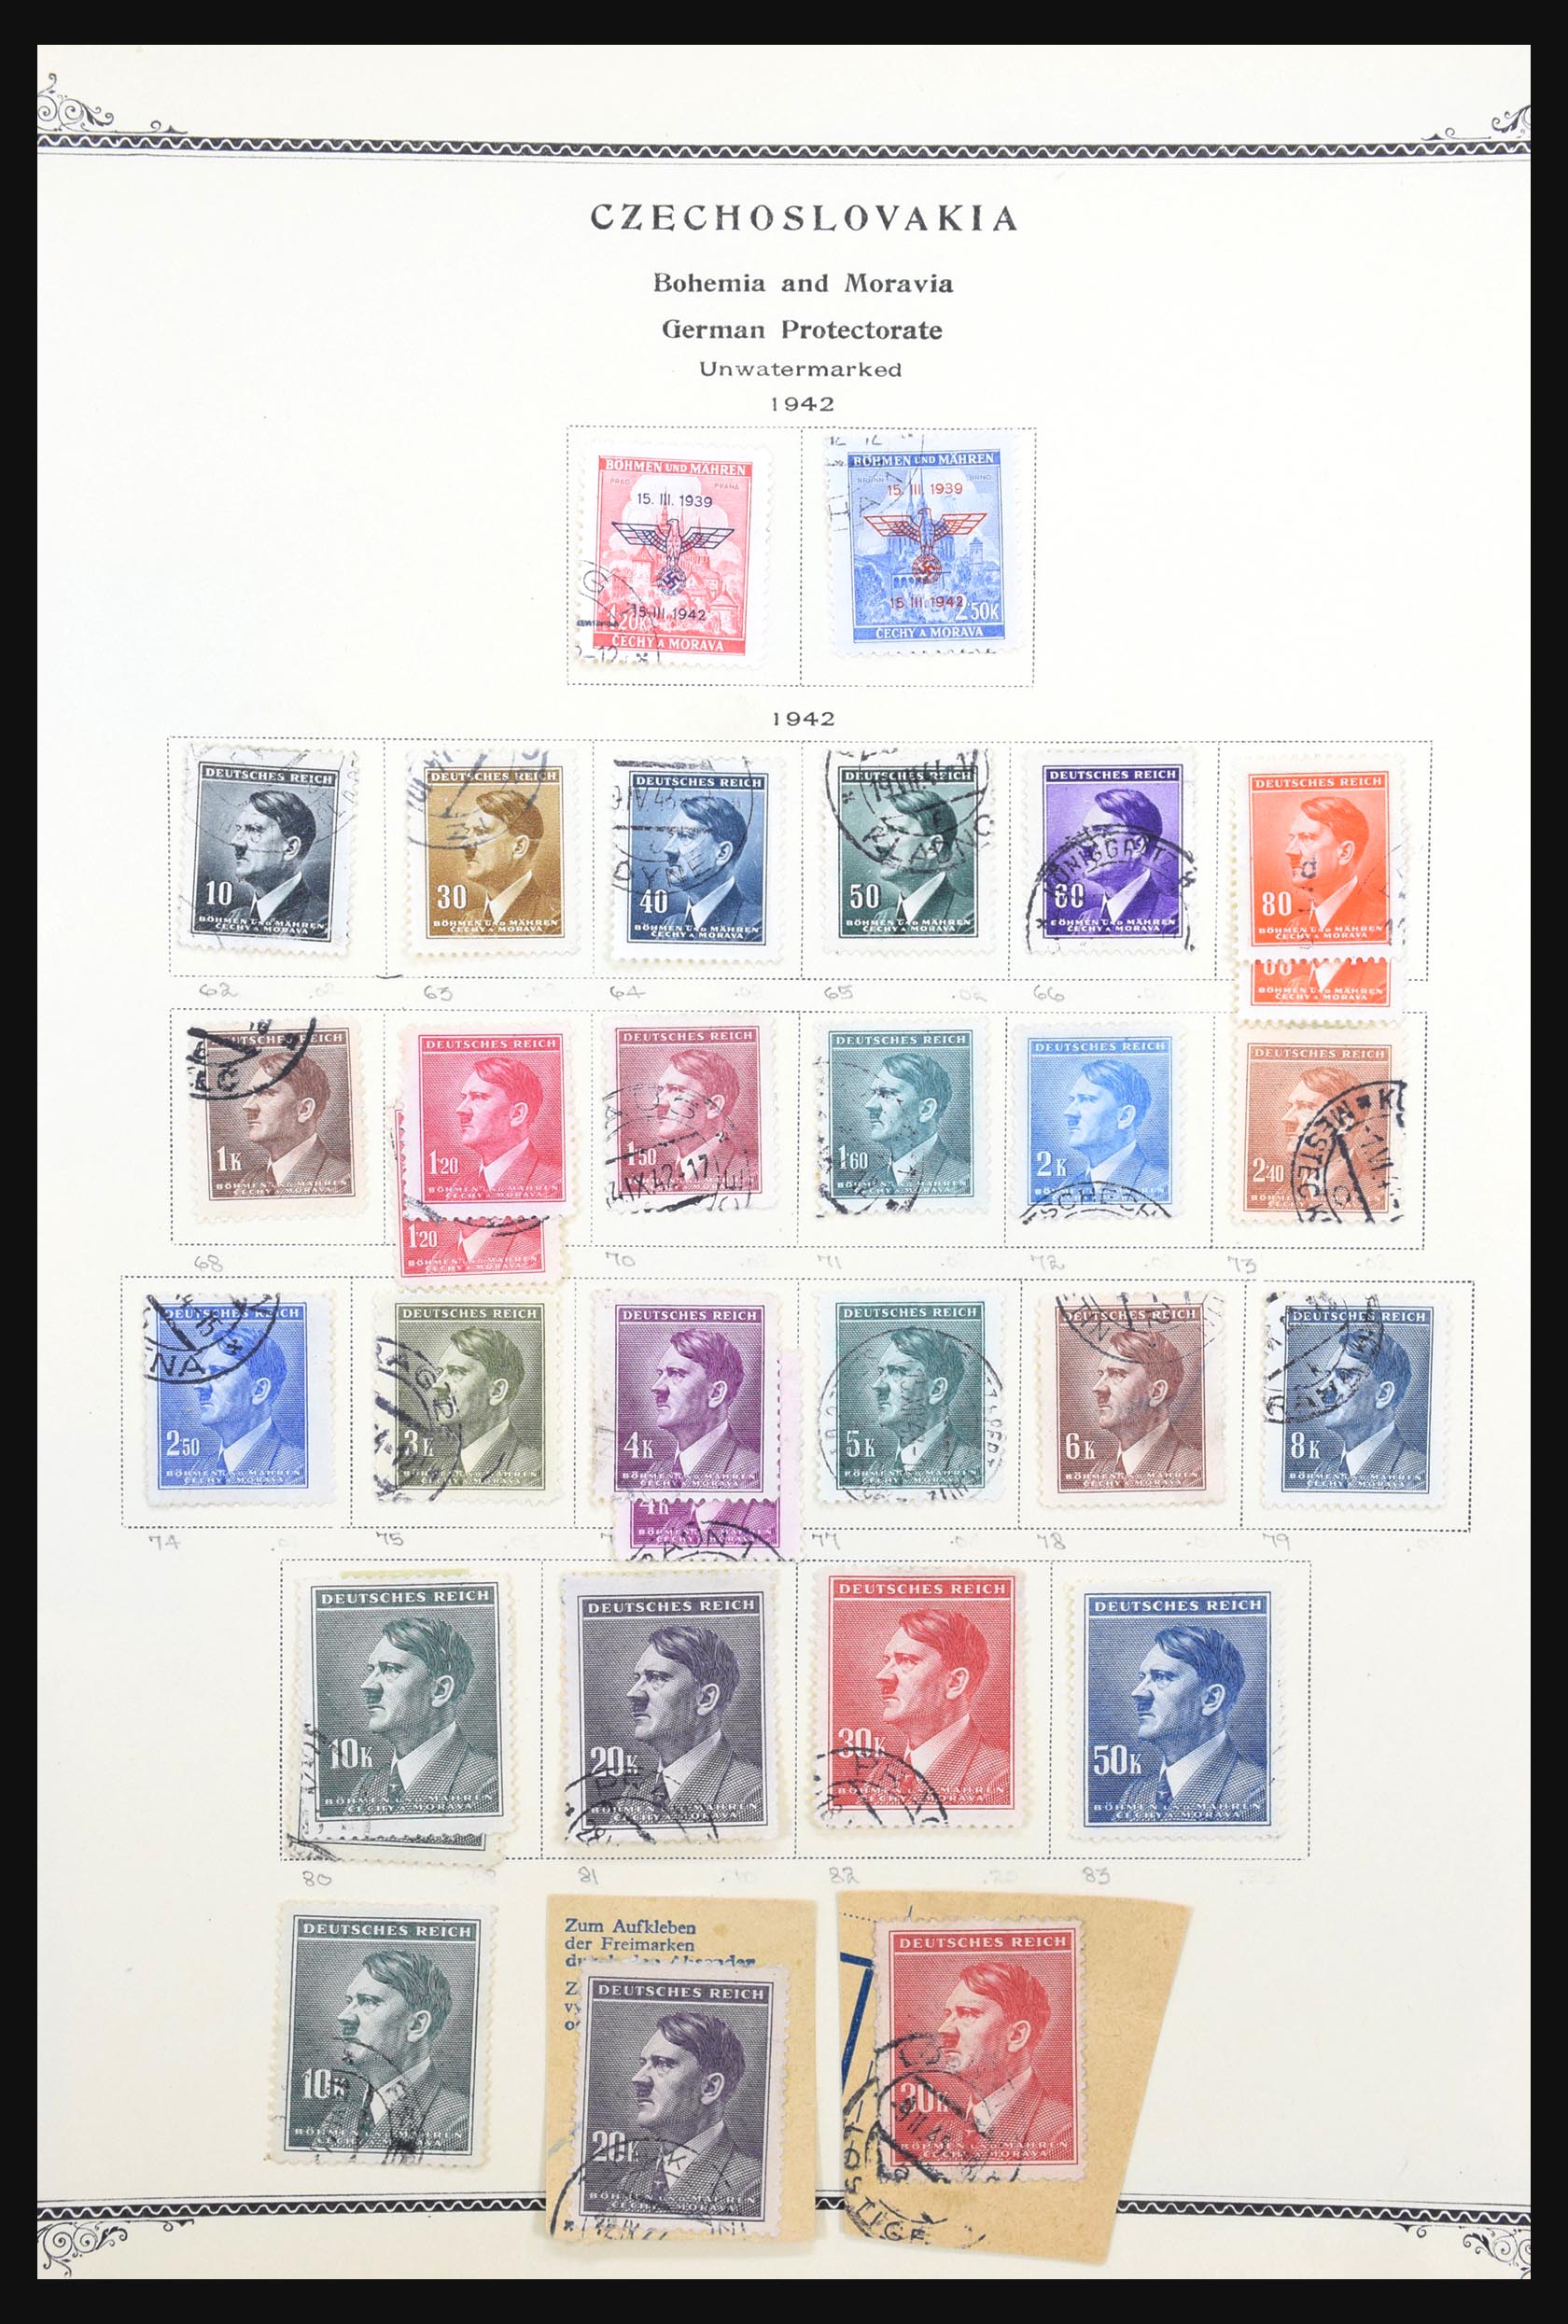 31300 035 - 31300 Duitsland superverzameling 1849-1990.